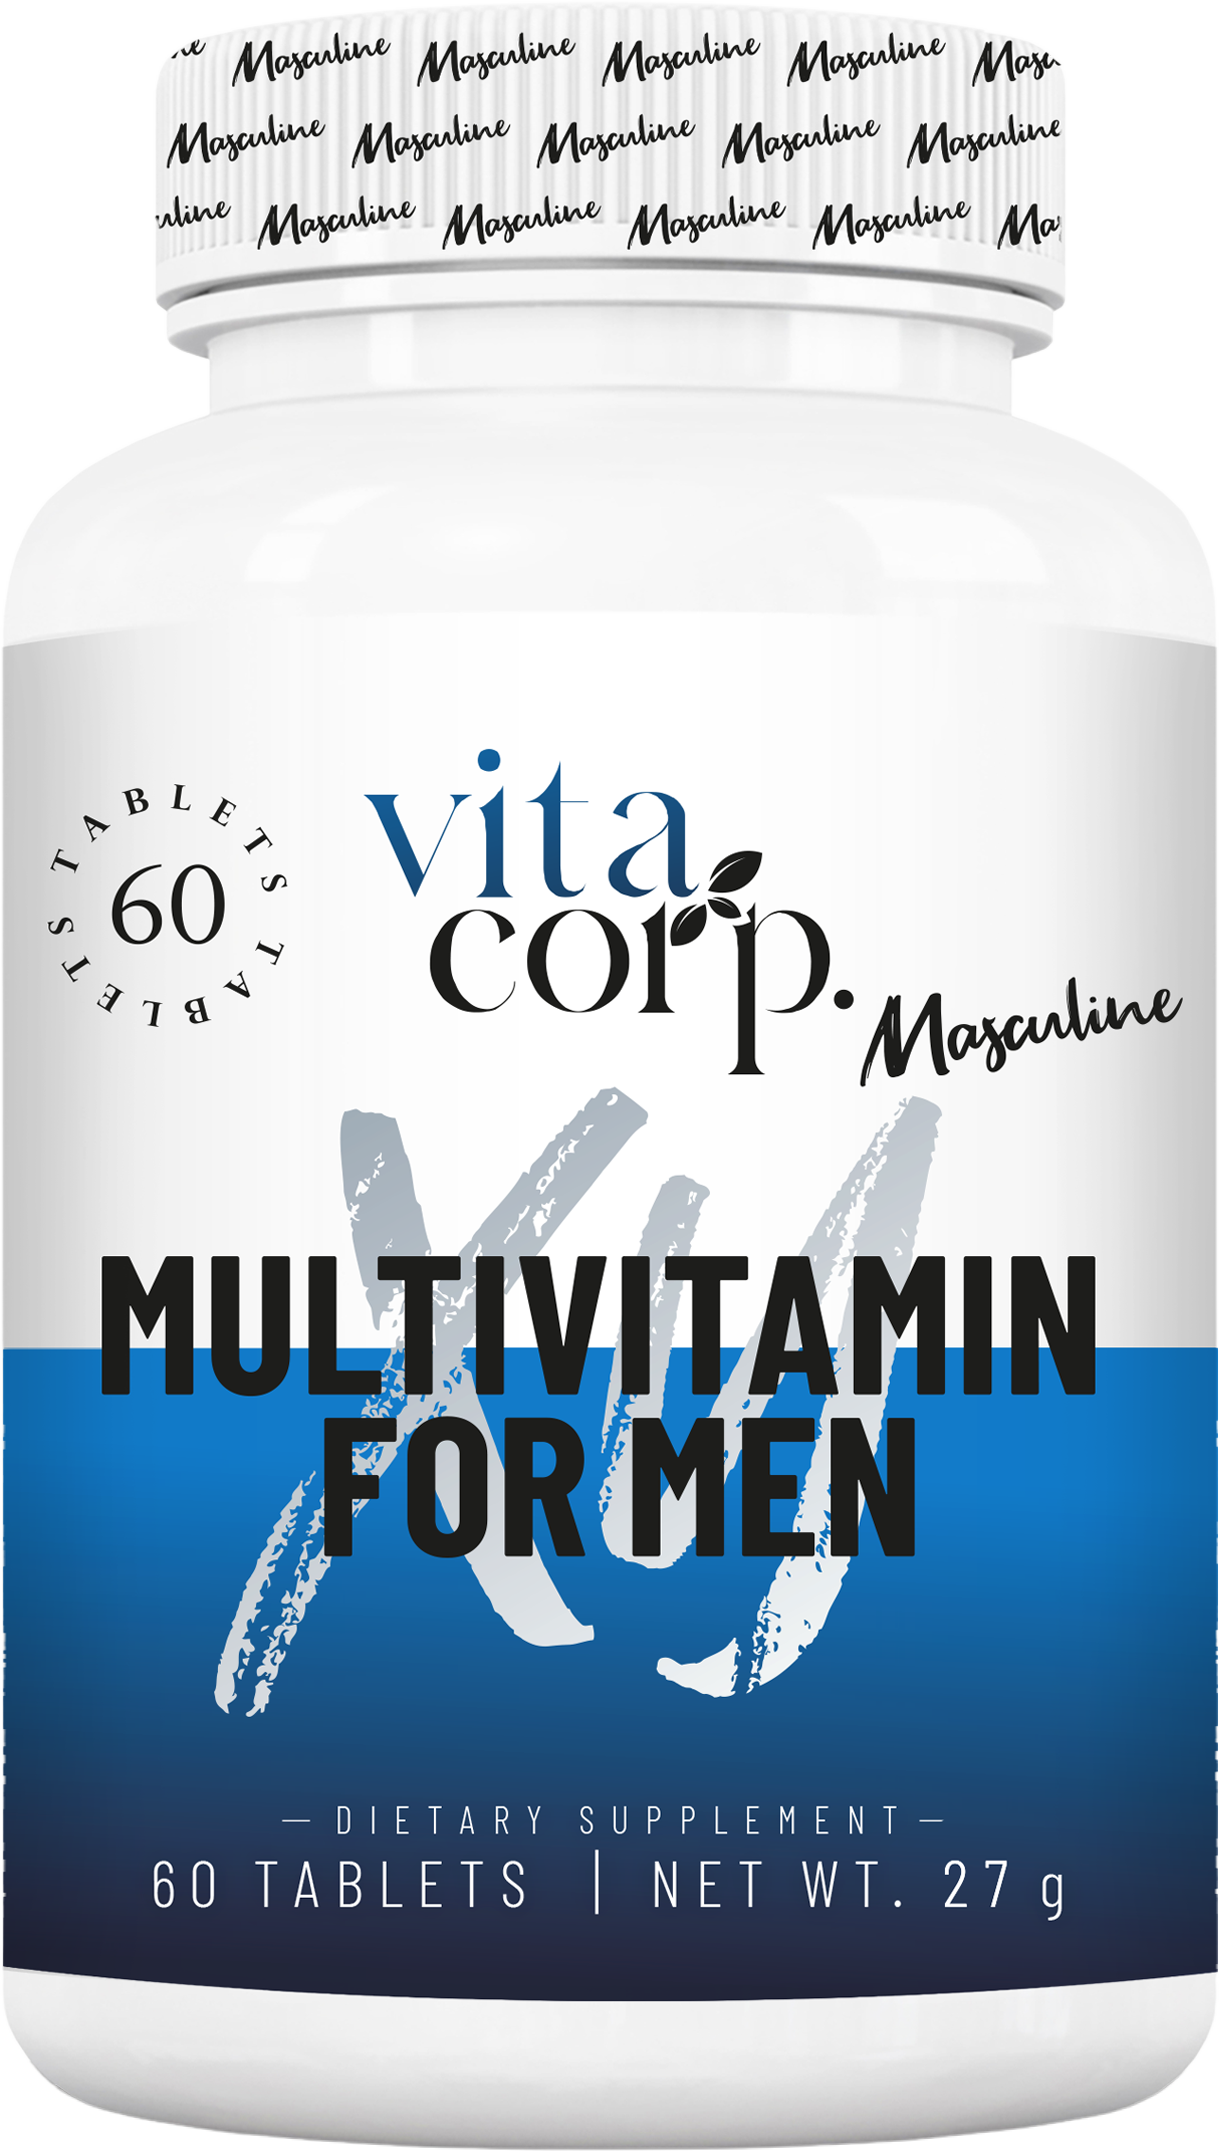 Masculine MultiVitamin for Men - BadiZdrav.BG